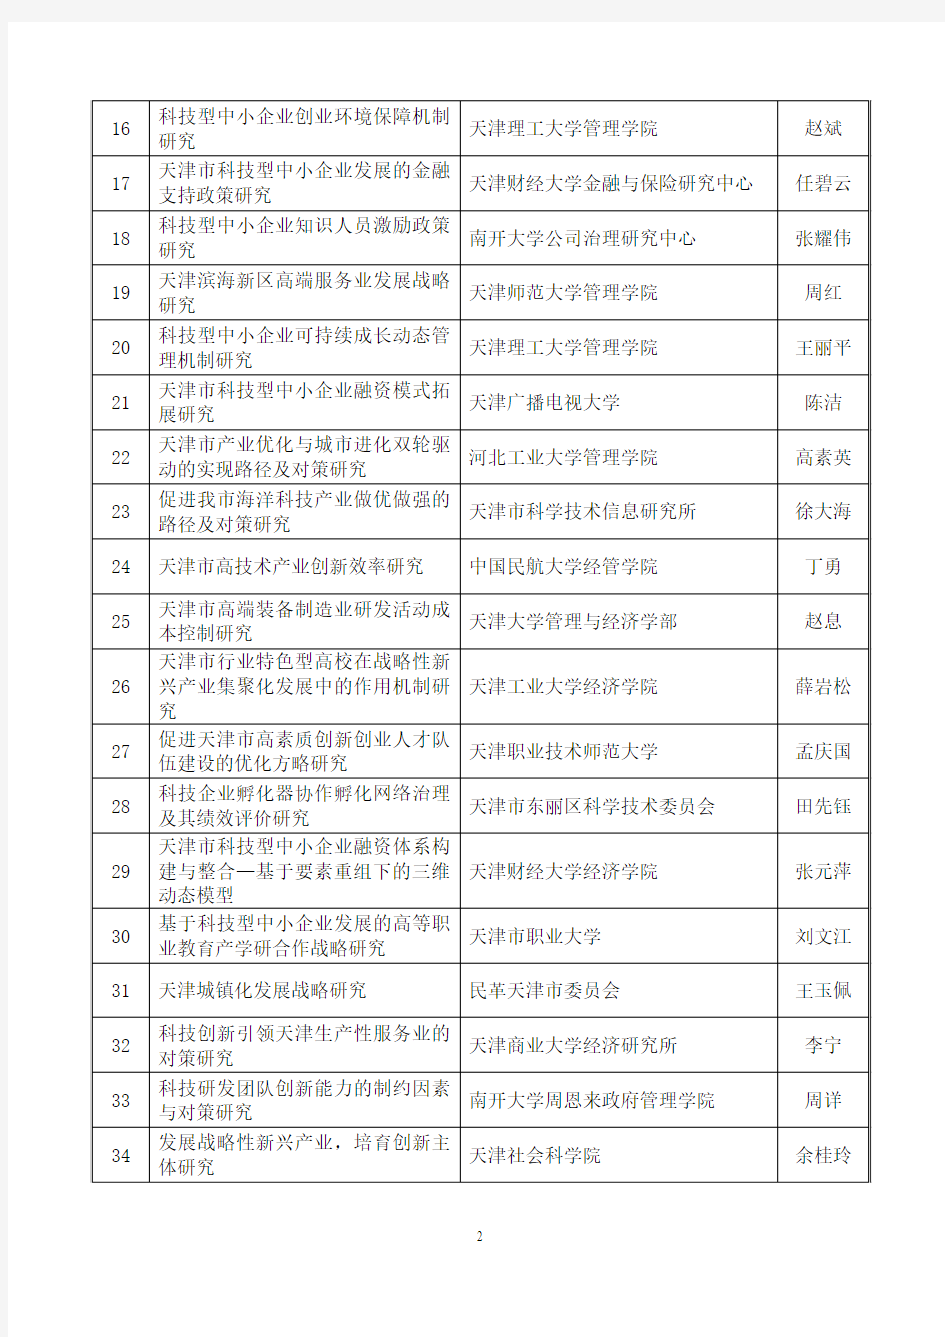 2011年天津市科技计划项目(第三批)立项公告